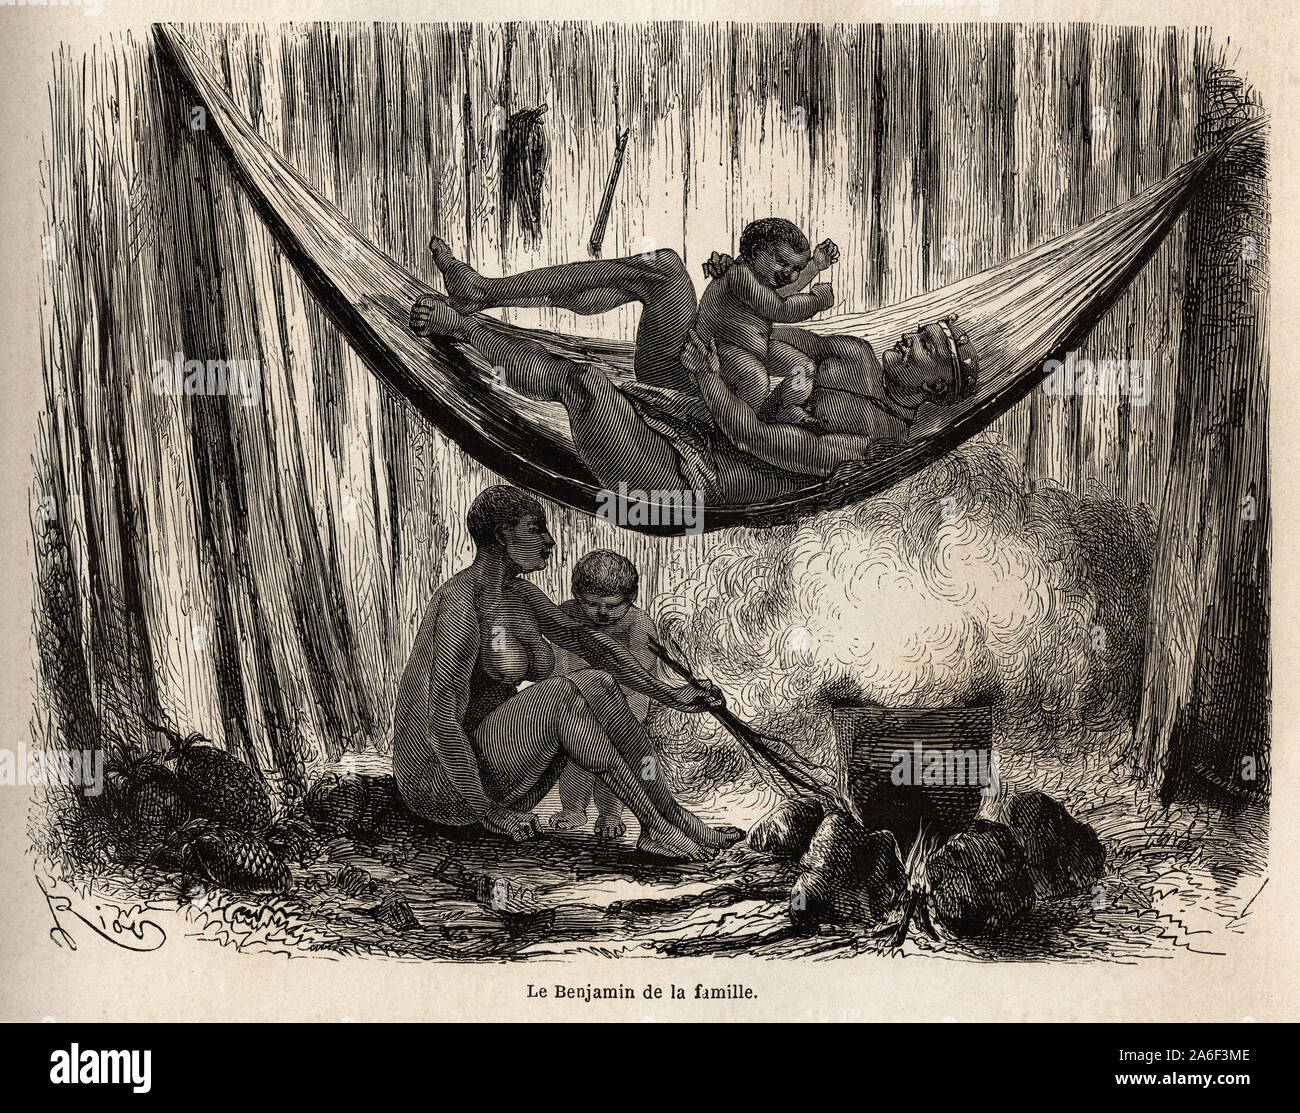 Scena de la vie familiale chez les indiens Yahuas de la Mission de San Jose ( Perou), l'homme joue avec son dernier ne dans un hamac, pendente que la f Foto Stock